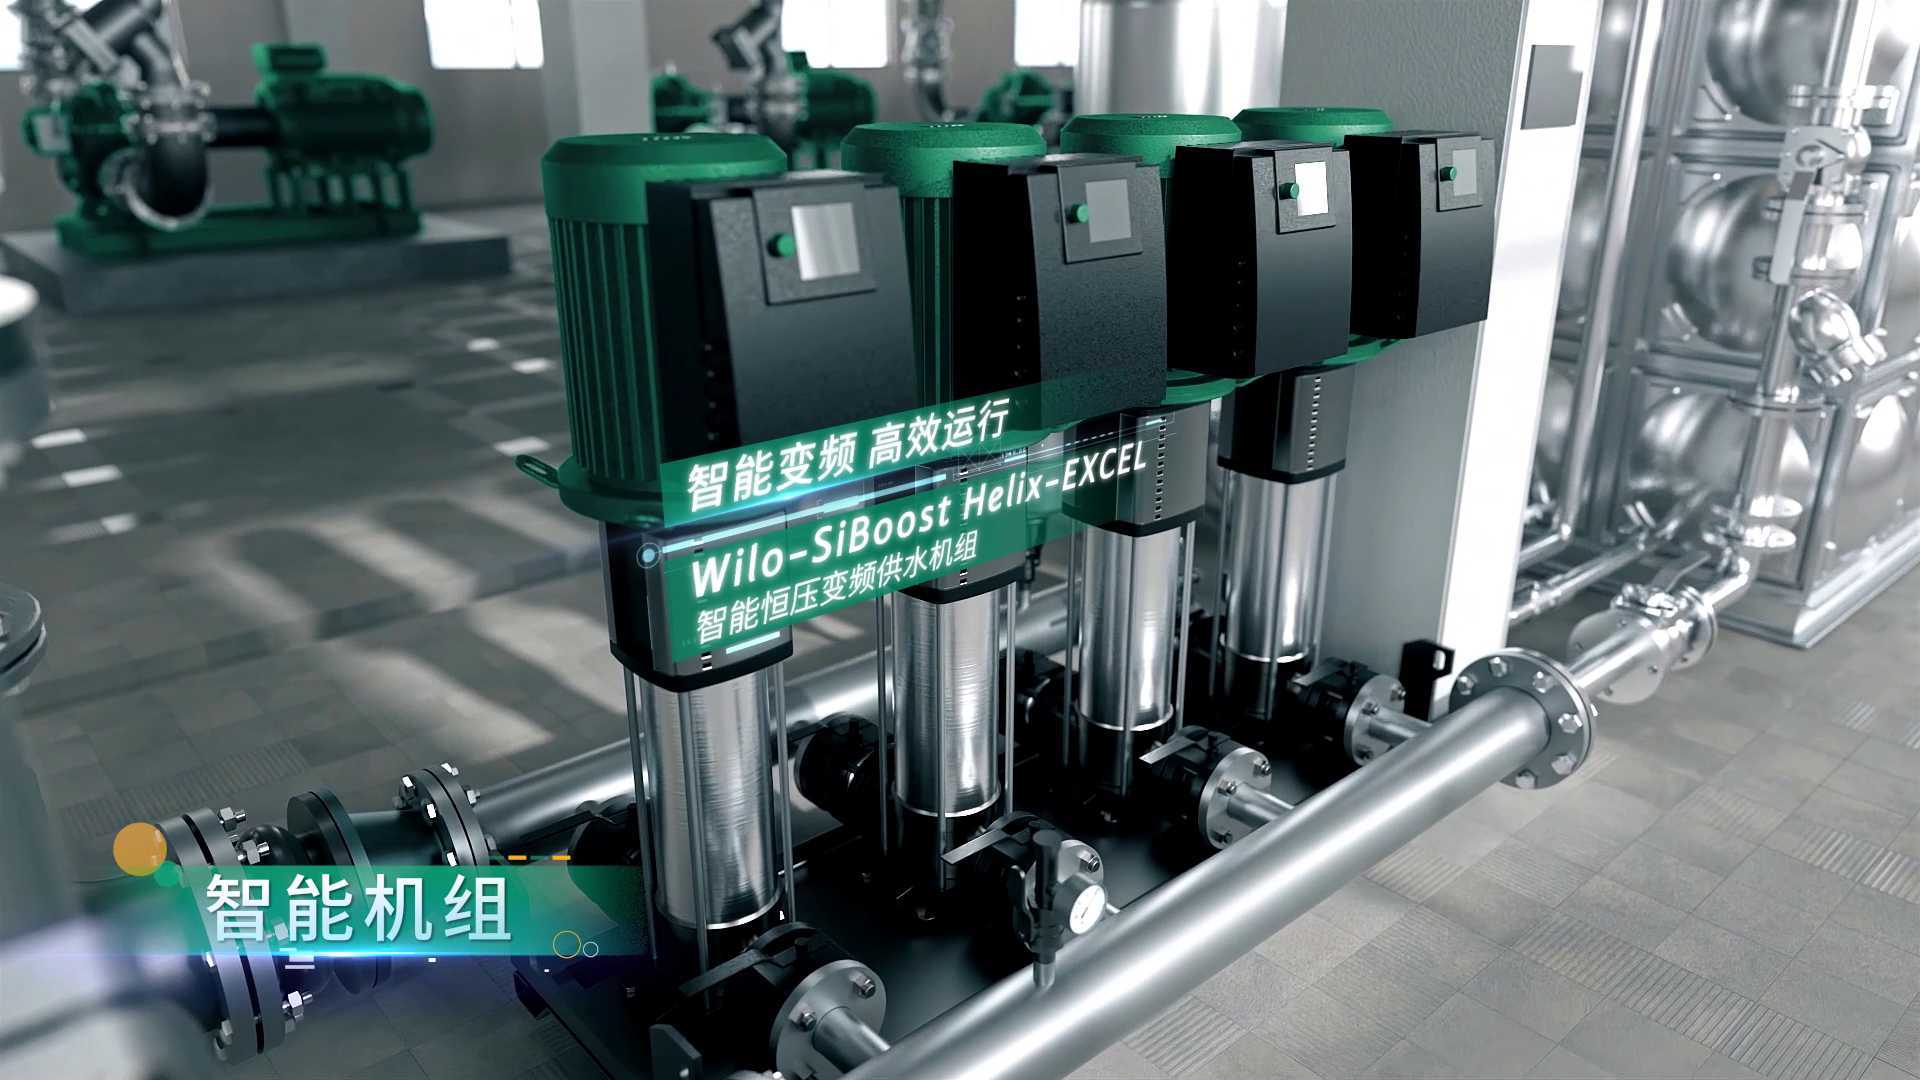 威乐数据中心高效水泵方案供应商宣传视频